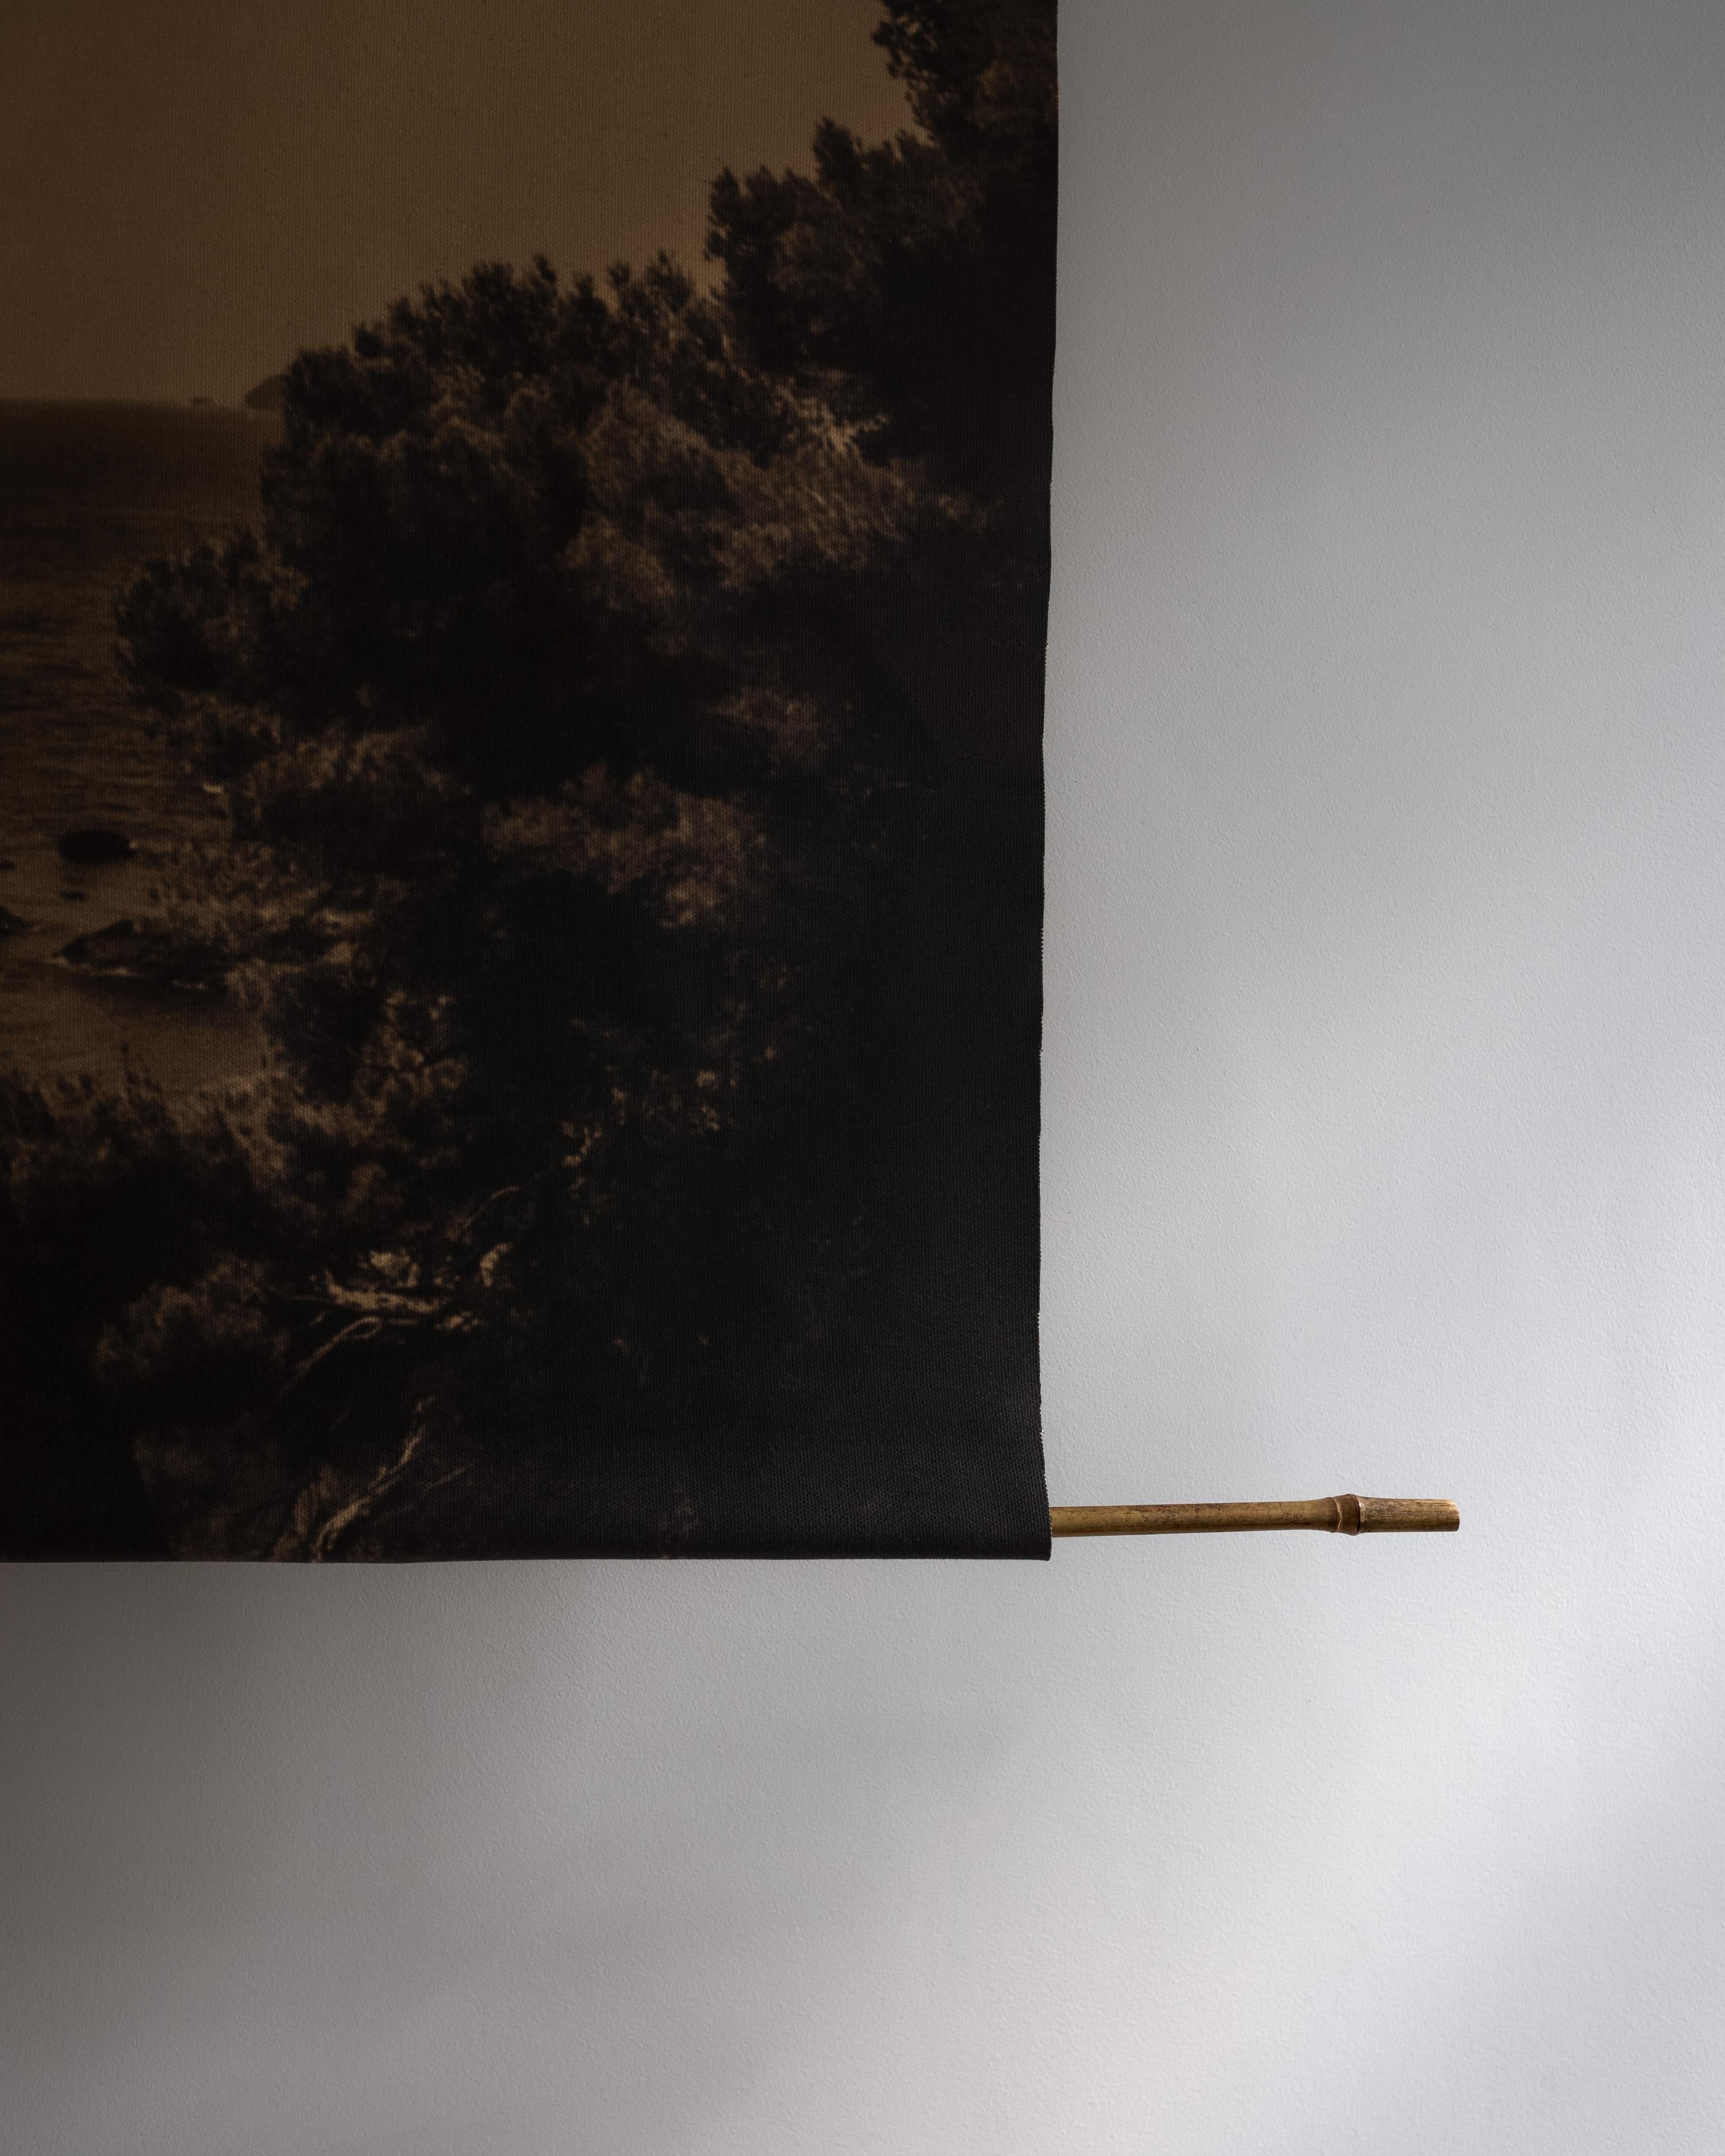 Prevail-organic Baumwoll-Leinwand scroll auf Bambus 120x96cm Limitierte Auflage 2 von 5 Stück.  – Photograph von Ugne Pouwell